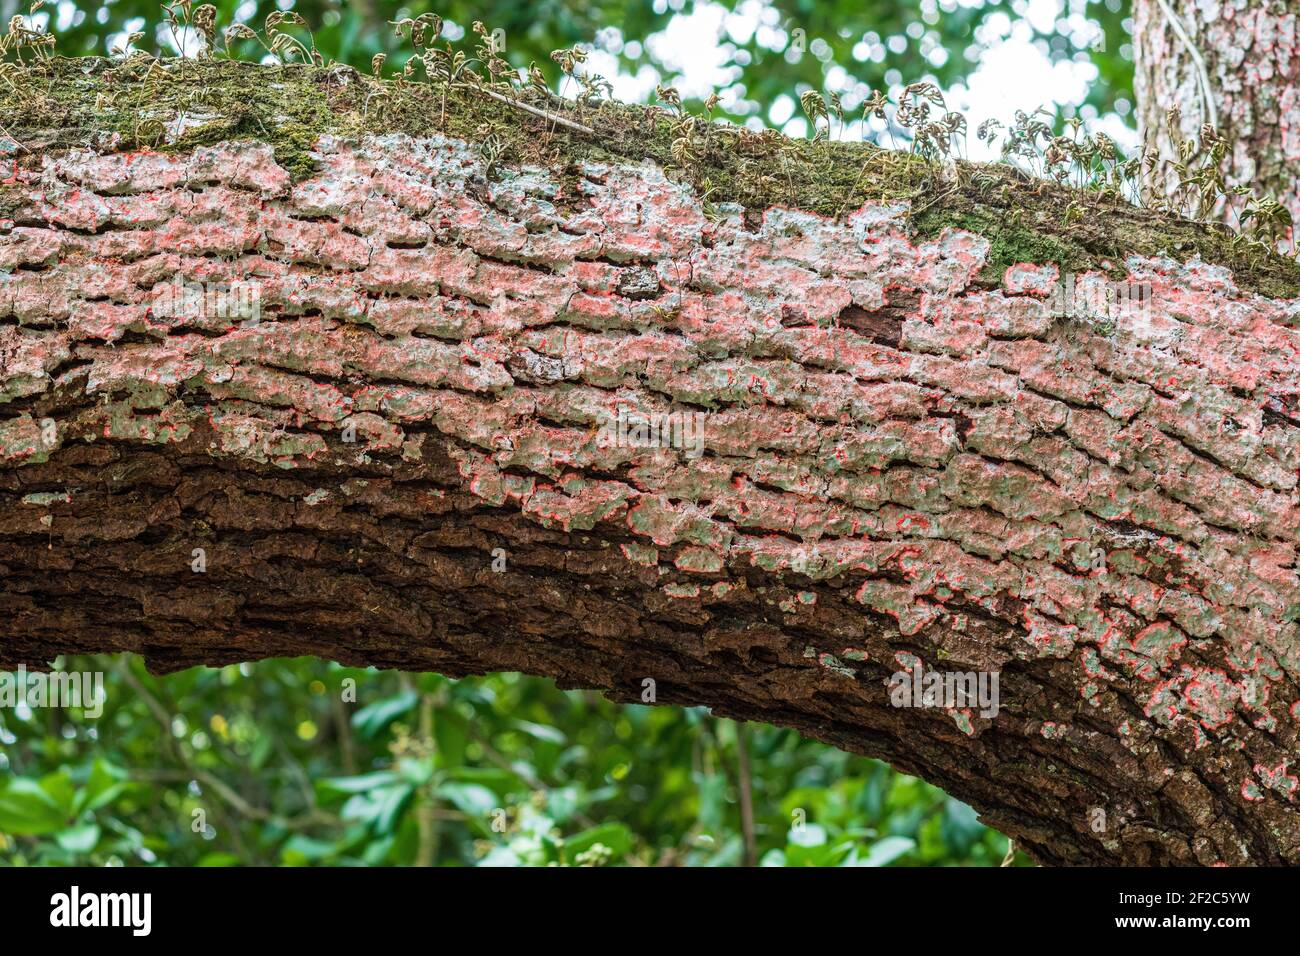 Scarlet lichen a.k.a. Christmas wreath lichen (Cryptothecia rubrocincta) on bark of a Southern live oak tree (Quercus virginiana) - Davie, Florida, US Stock Photo